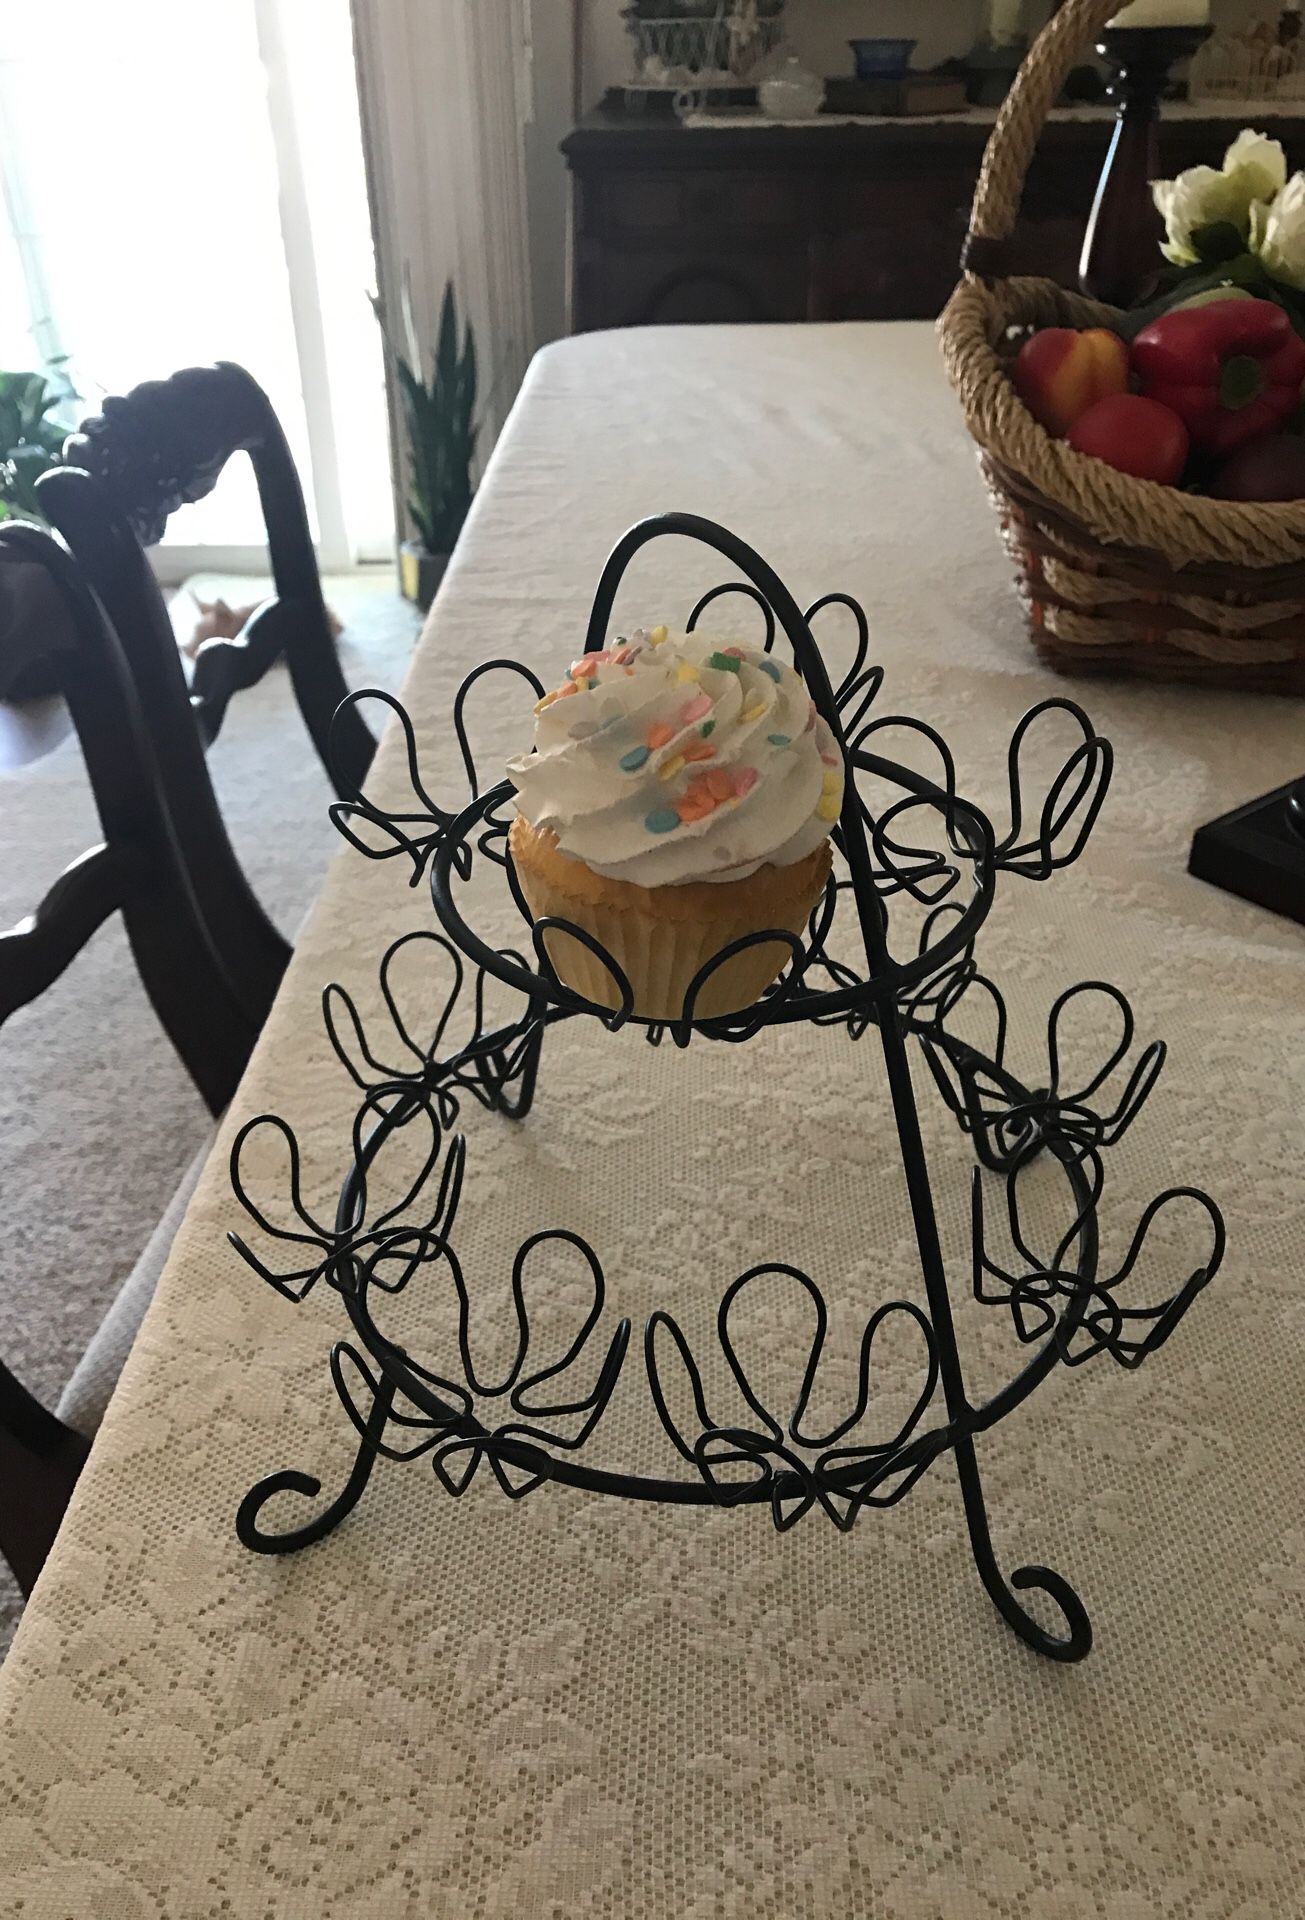 Cupcake holder